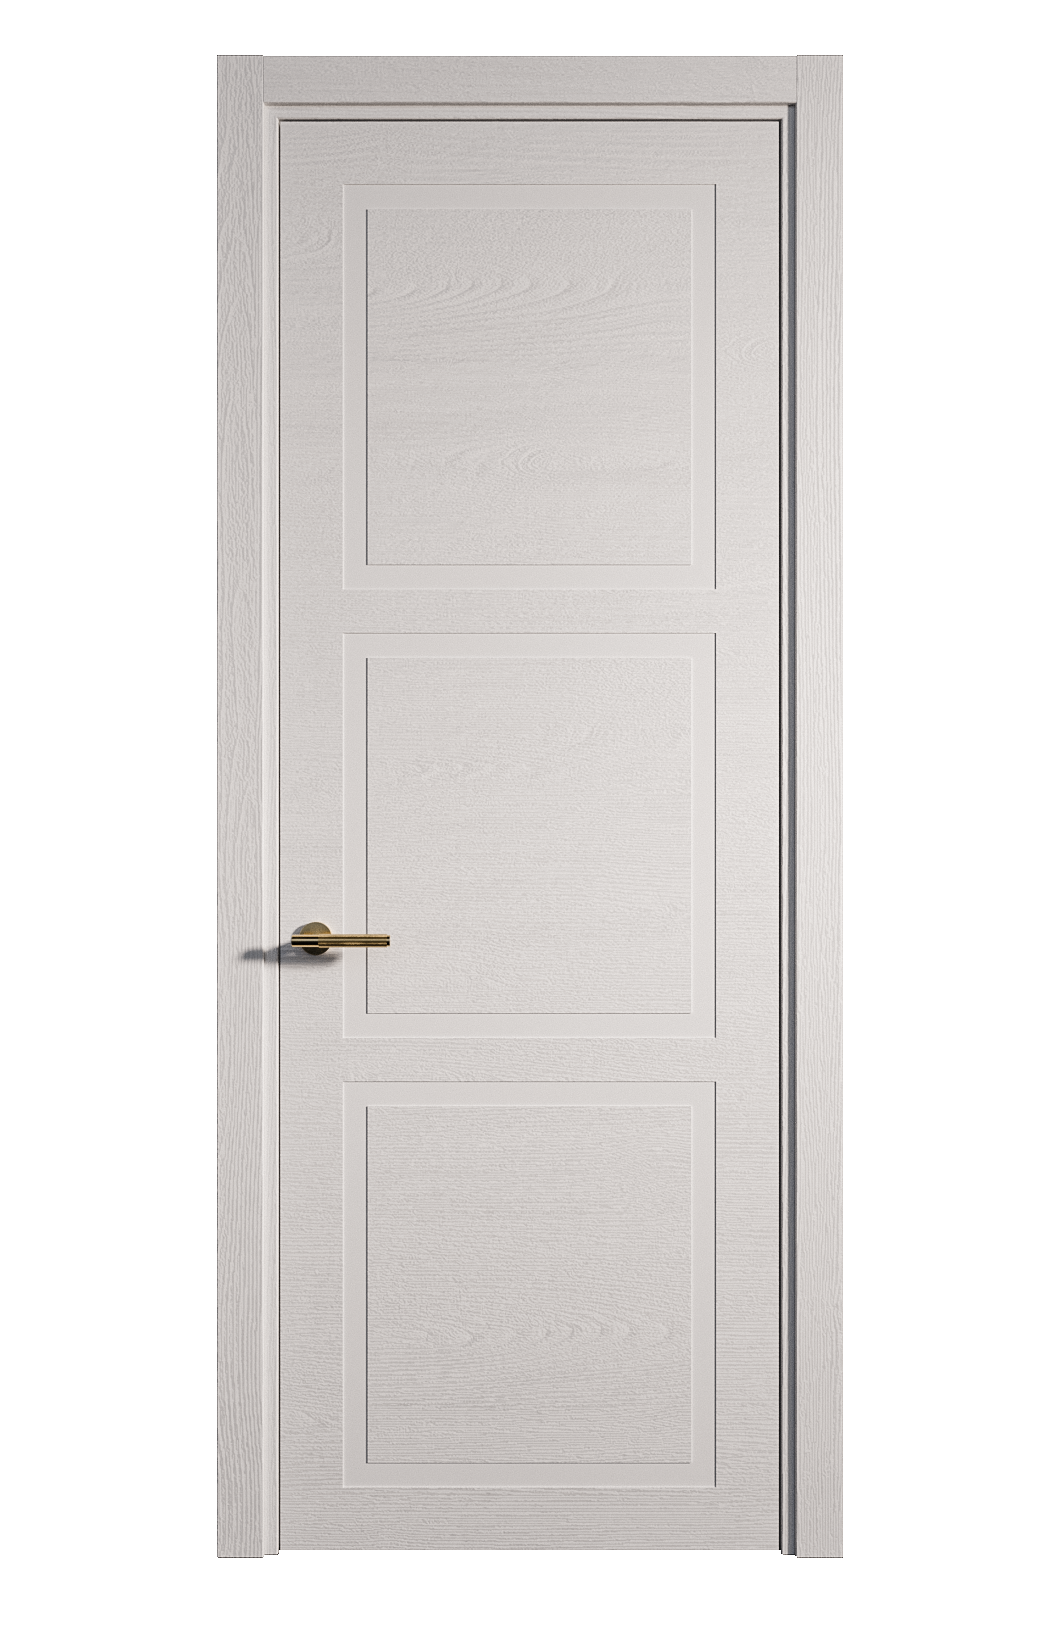 Межкомнатная дверь Бостон-3 глухая эмаль ral 9003 24485